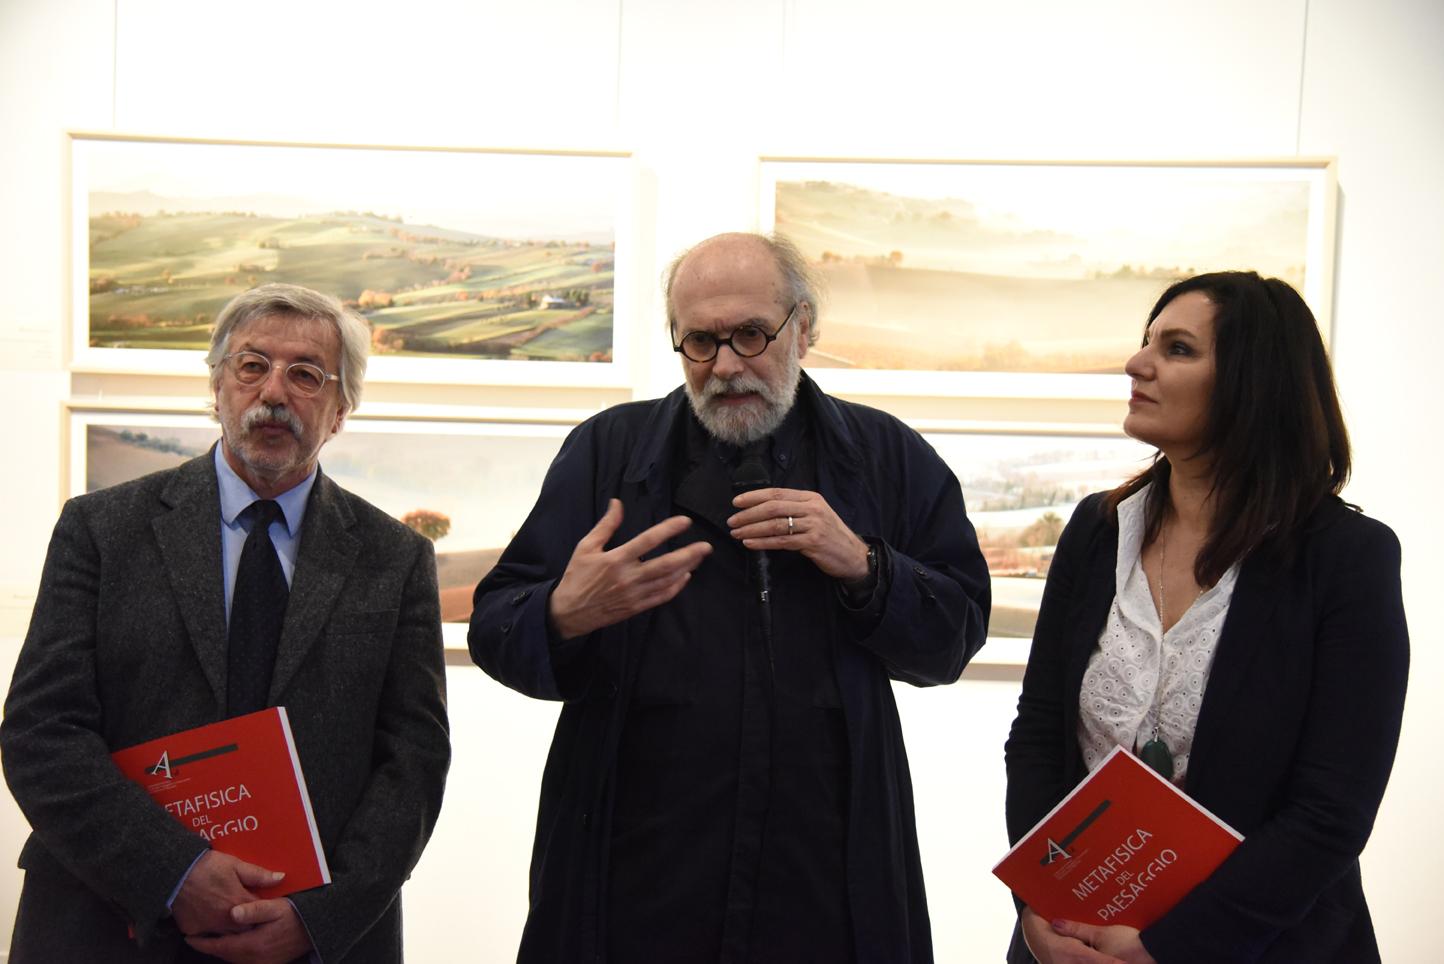 Percorsi d’arte e nuove letture con Roberto Cresti a Macerata